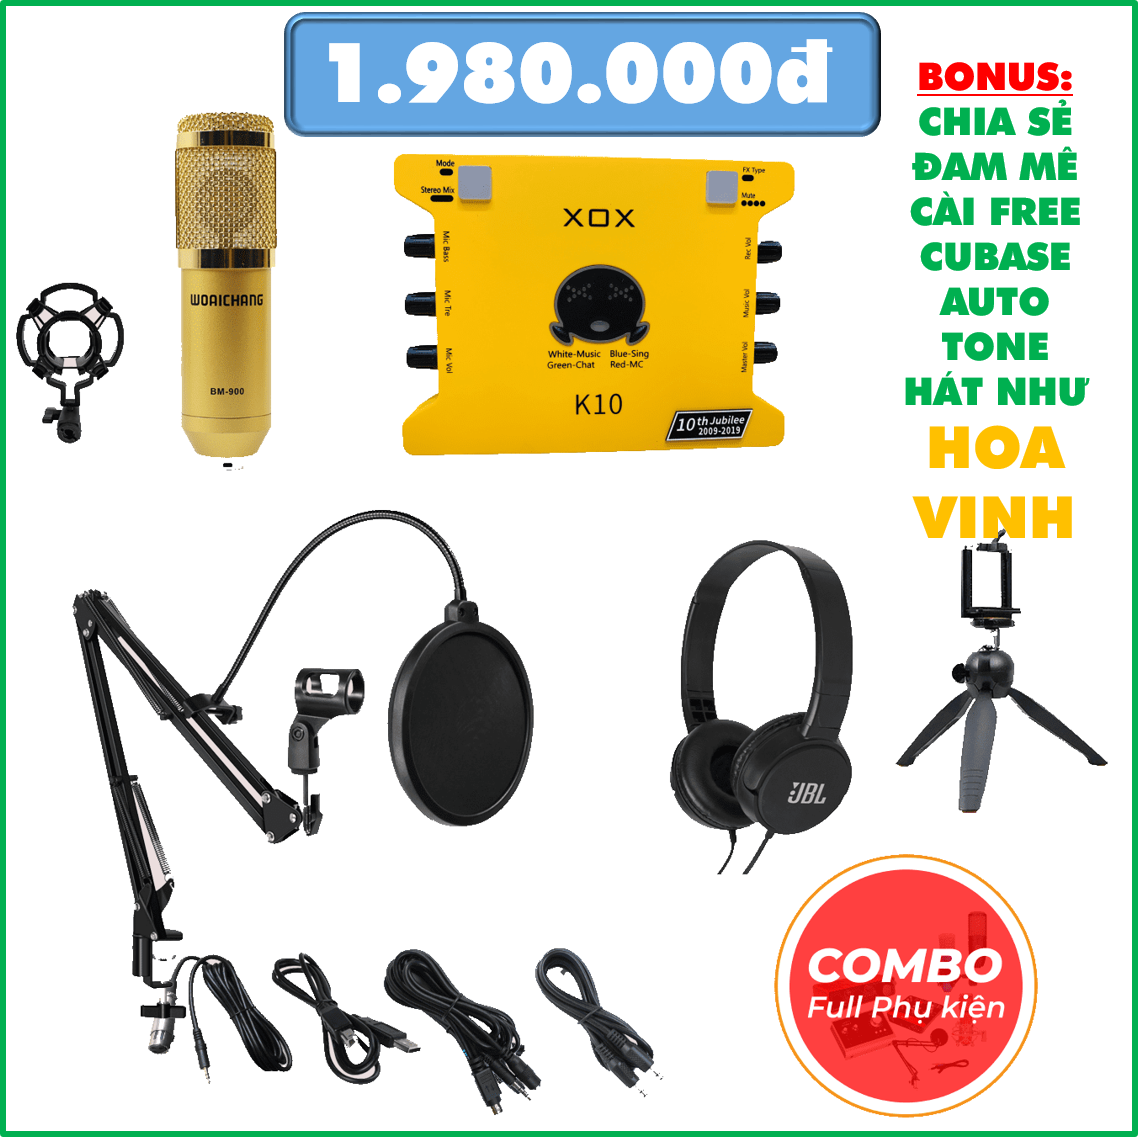 Combo mic ISK AT-100 và sound card XOX K10 full phụ kiện tặng tai nghe Sony-Quang Studio